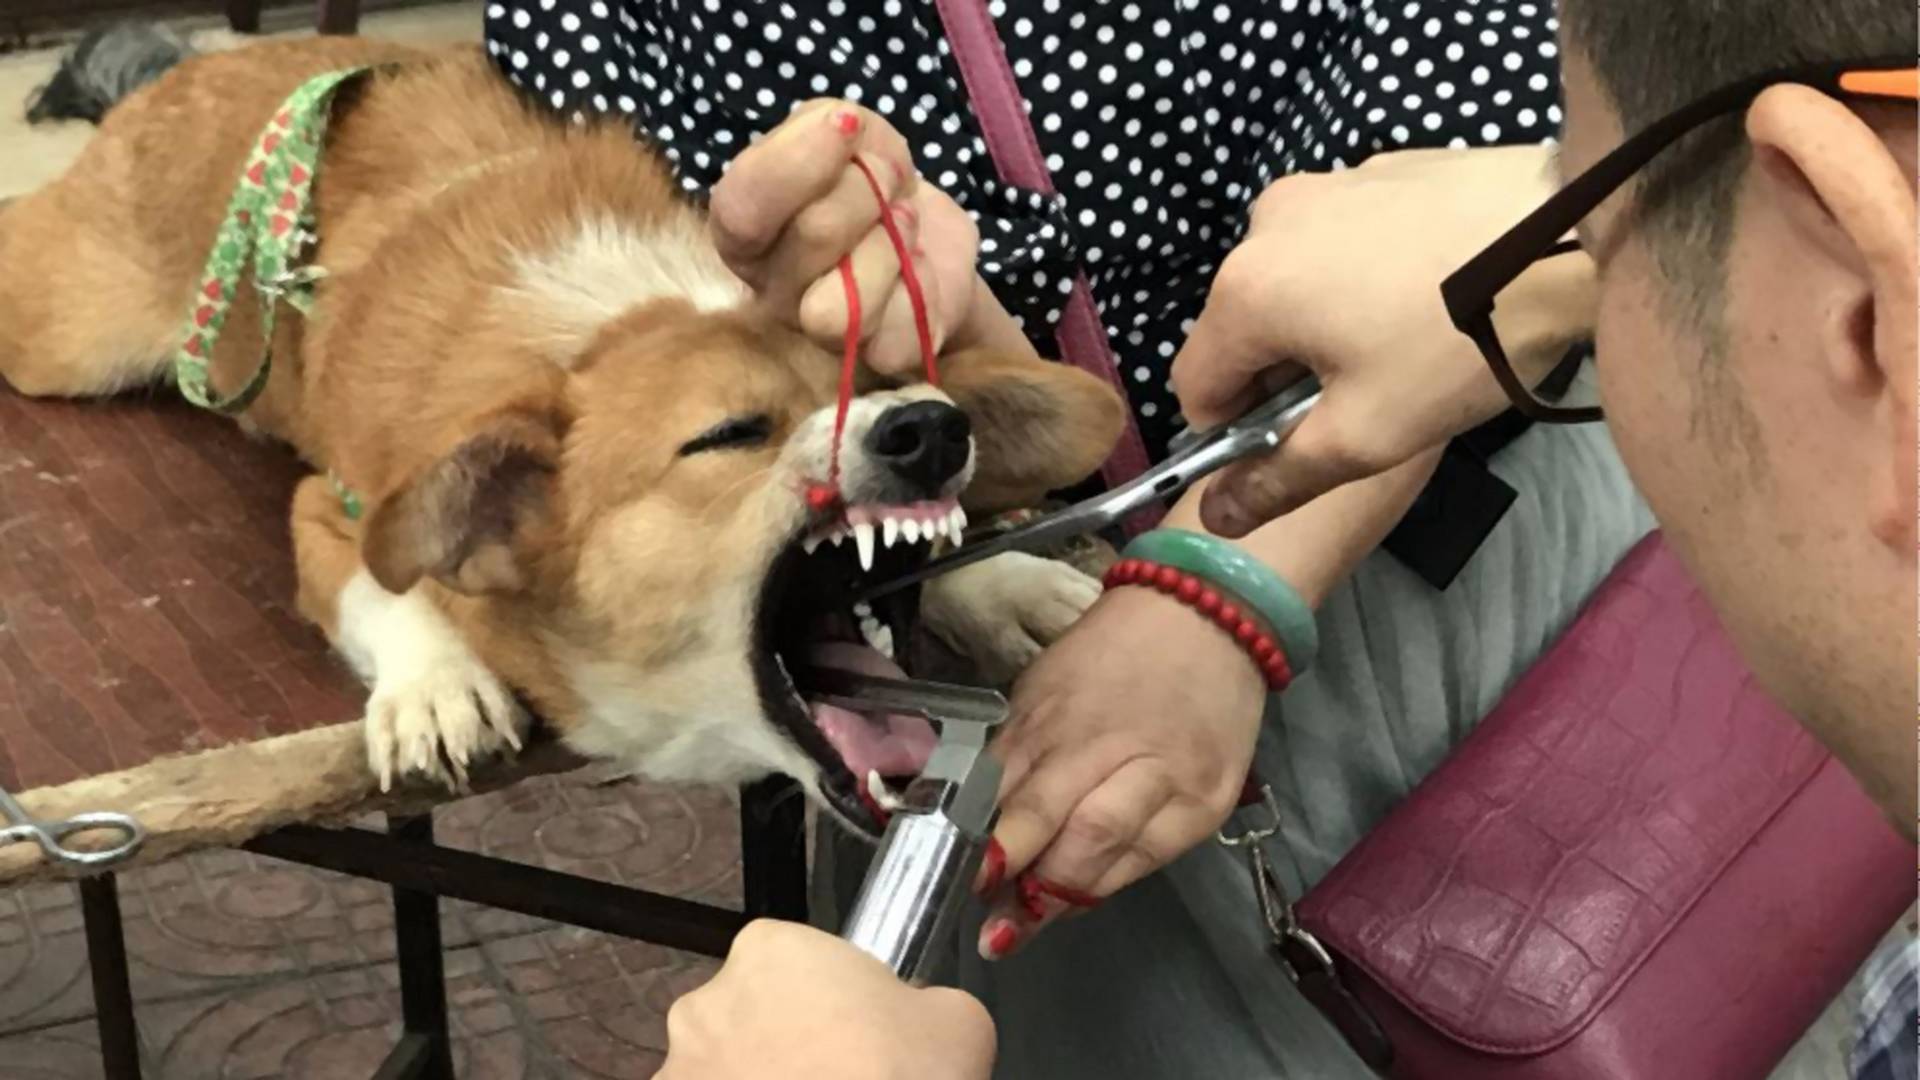 Mann verstümmelt Hunden die Stimmbänder, weil sie zu laut sind Noizz